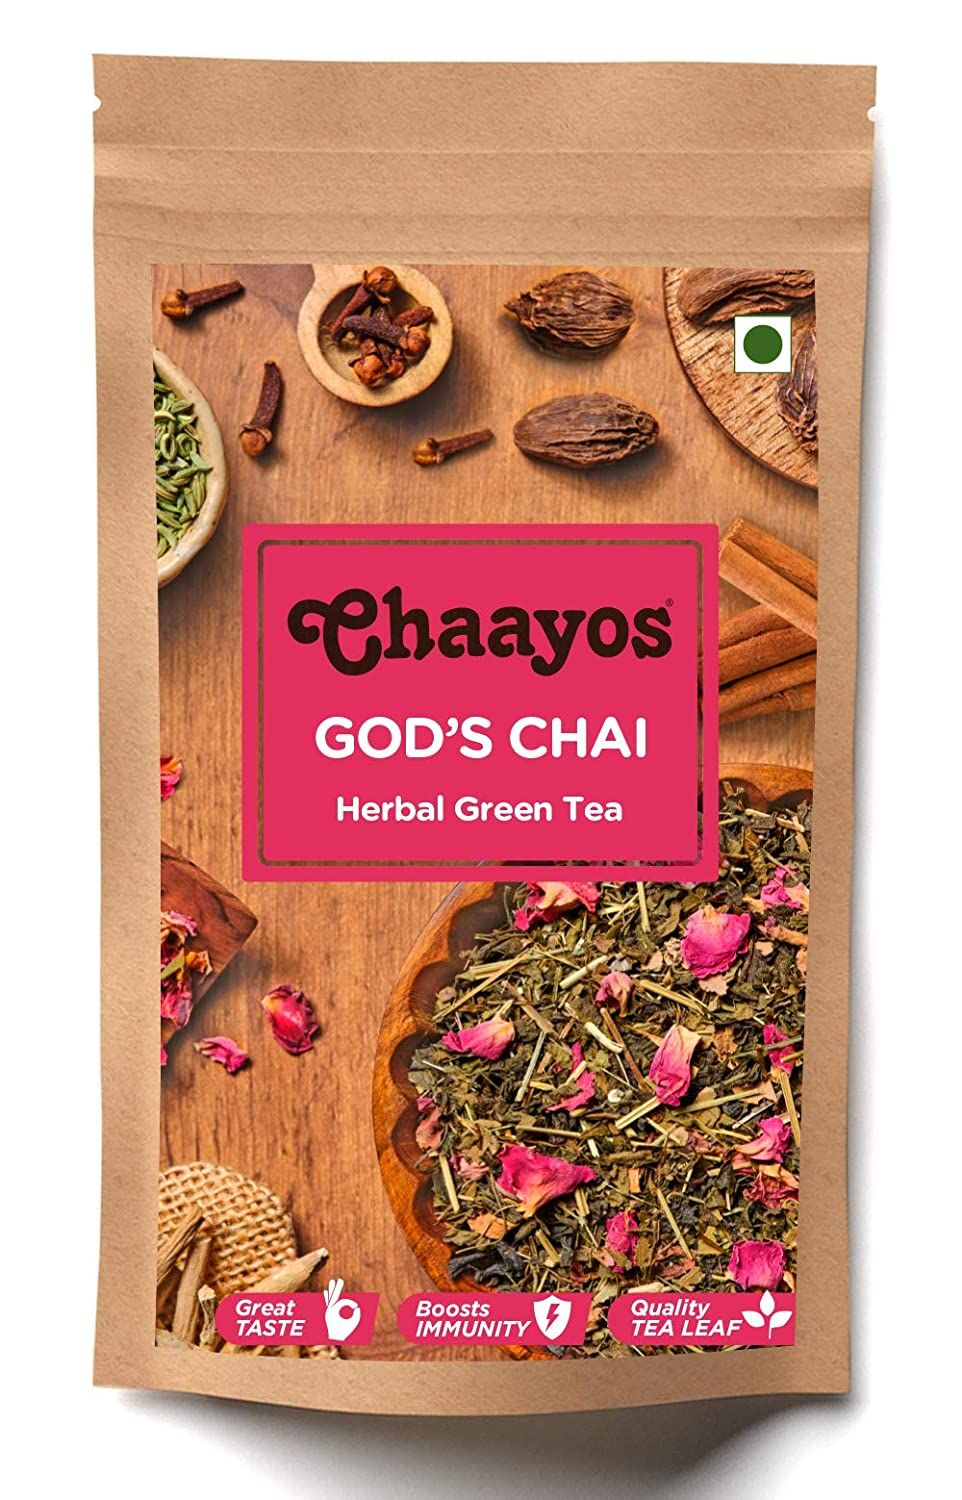 Chaayos God's Chai Image